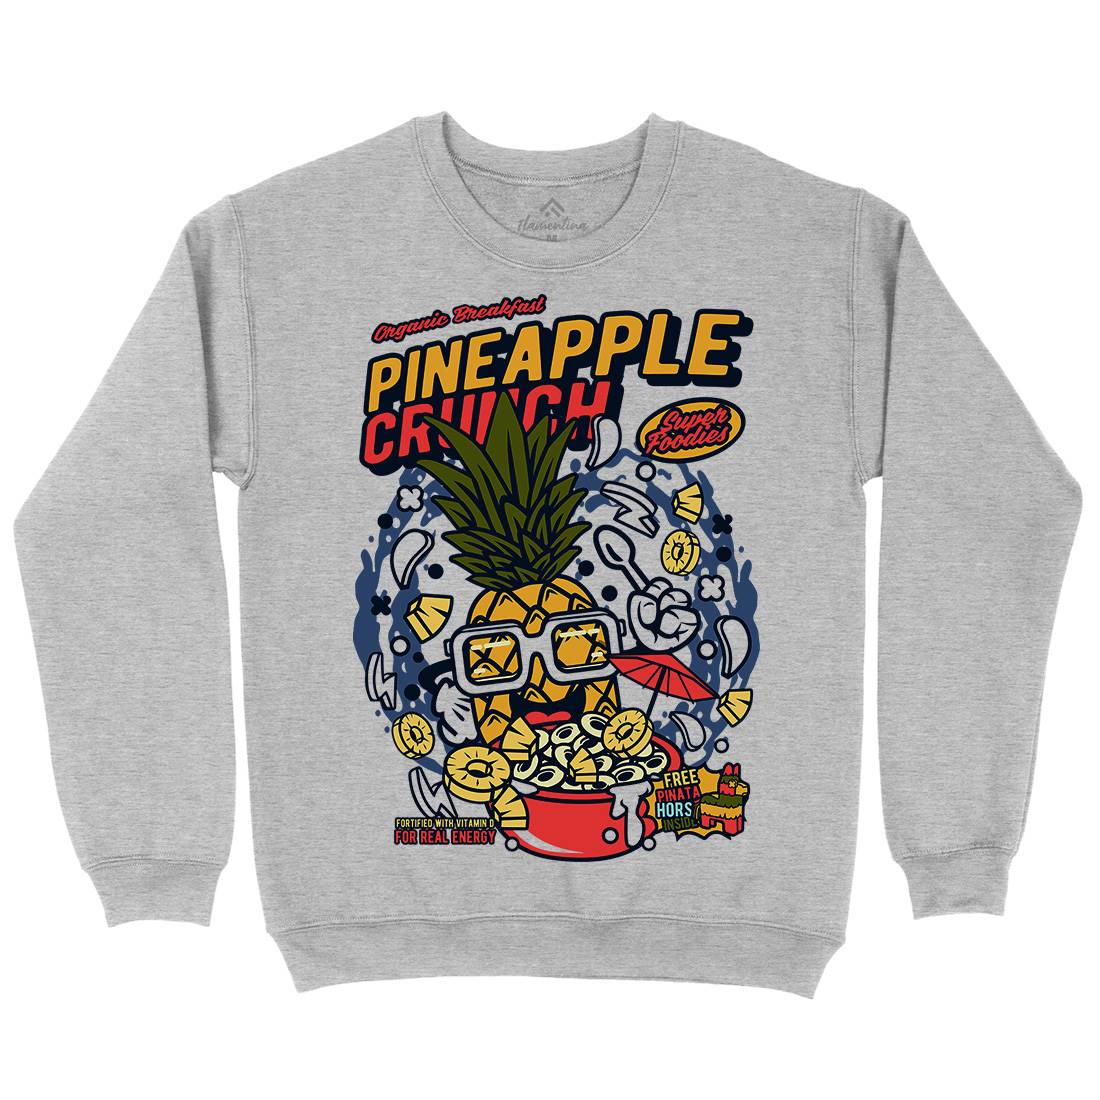 Pineapple Crunch Kids Crew Neck Sweatshirt Food C605